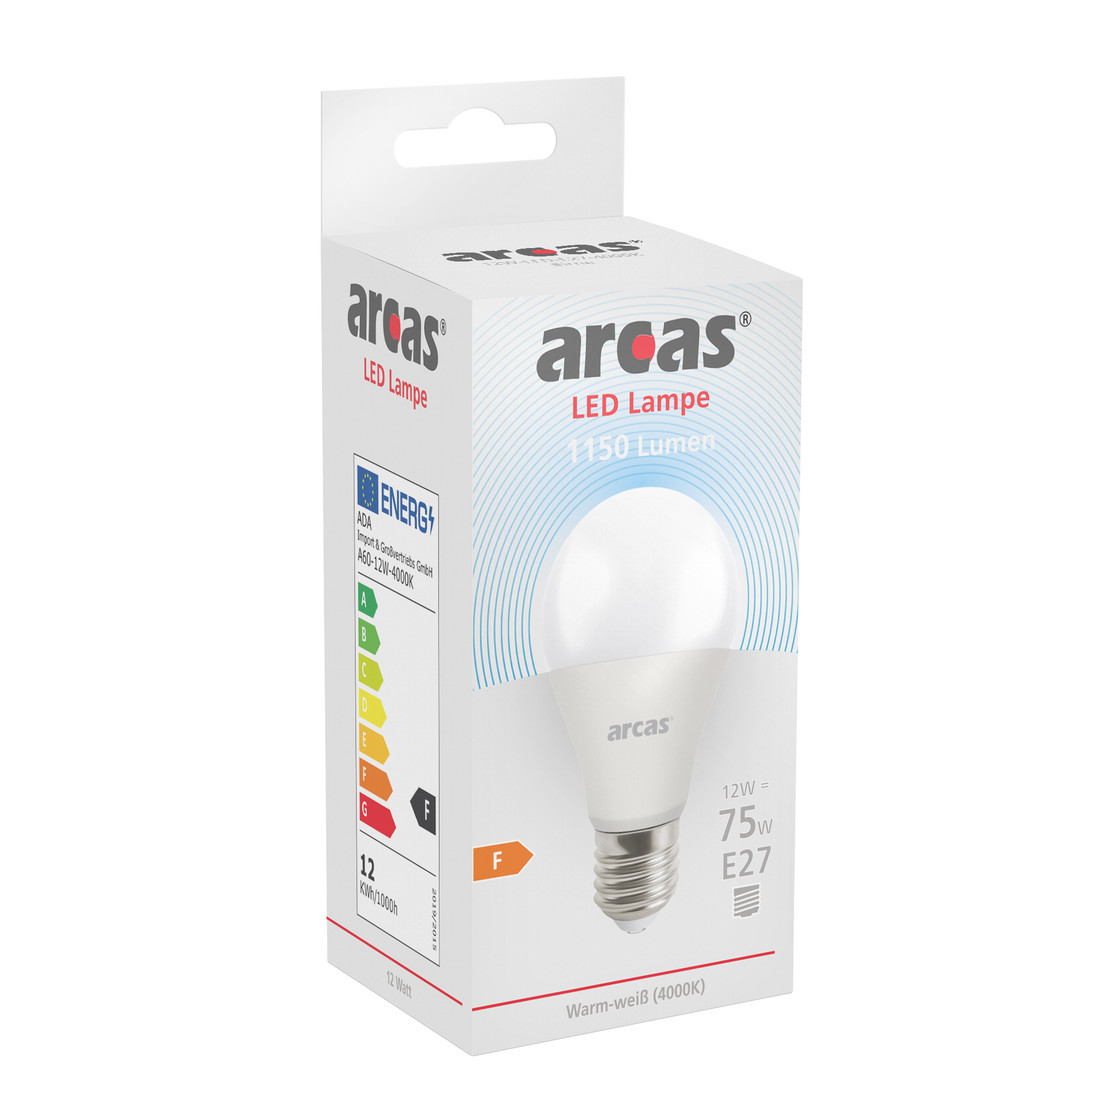 ARCAS LED Lampe / Glühlampe 80W / E27 12W / A60 entspricht 11 / Birne